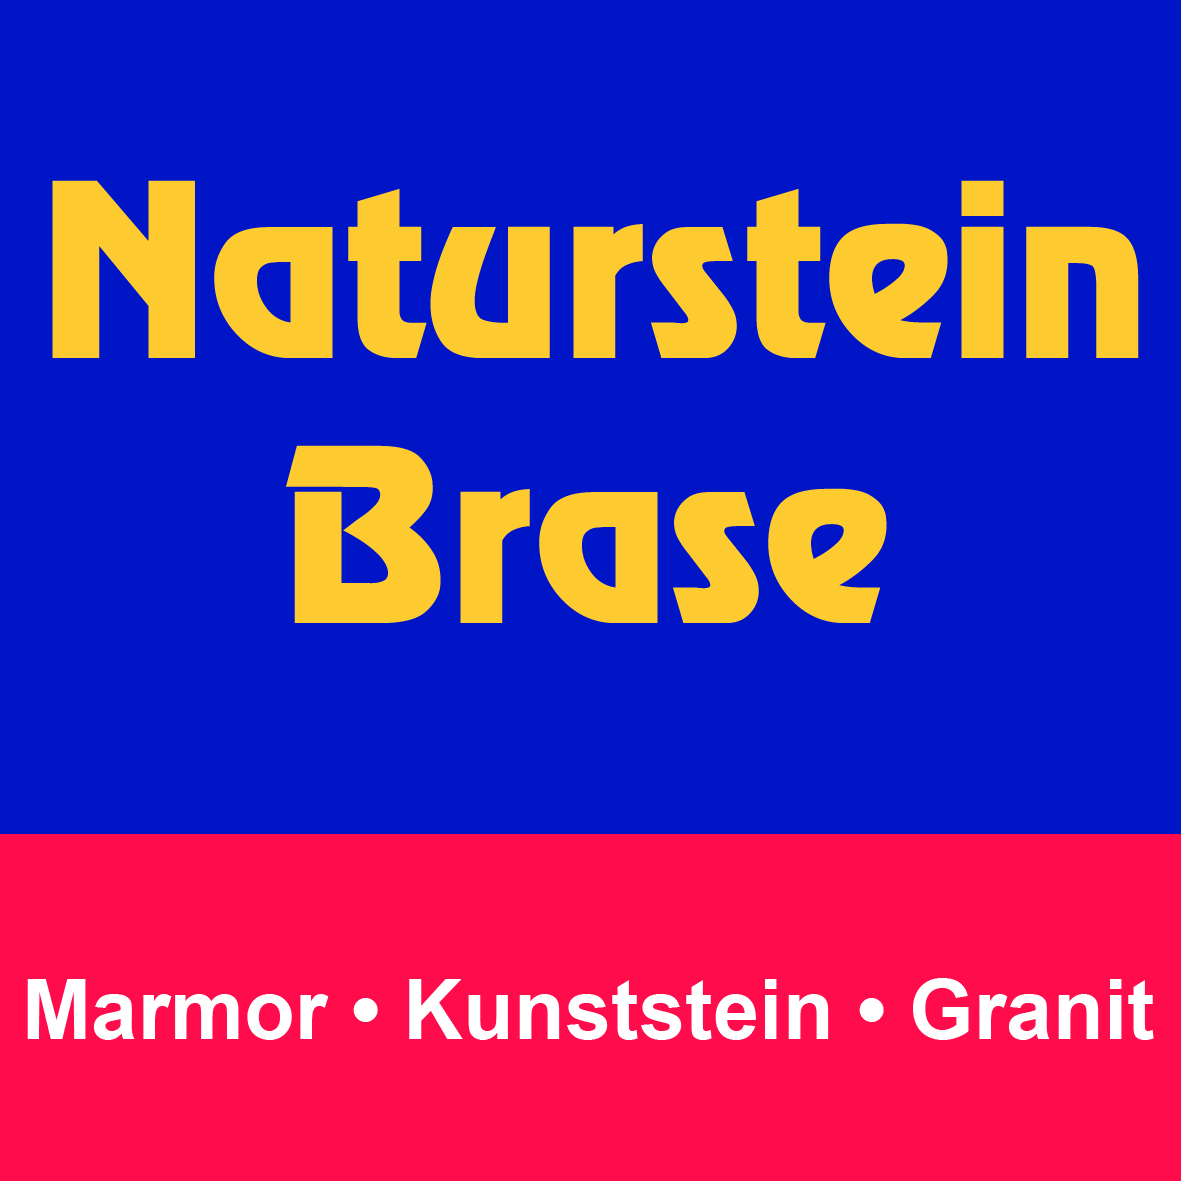 (c) Naturstein-brase.de